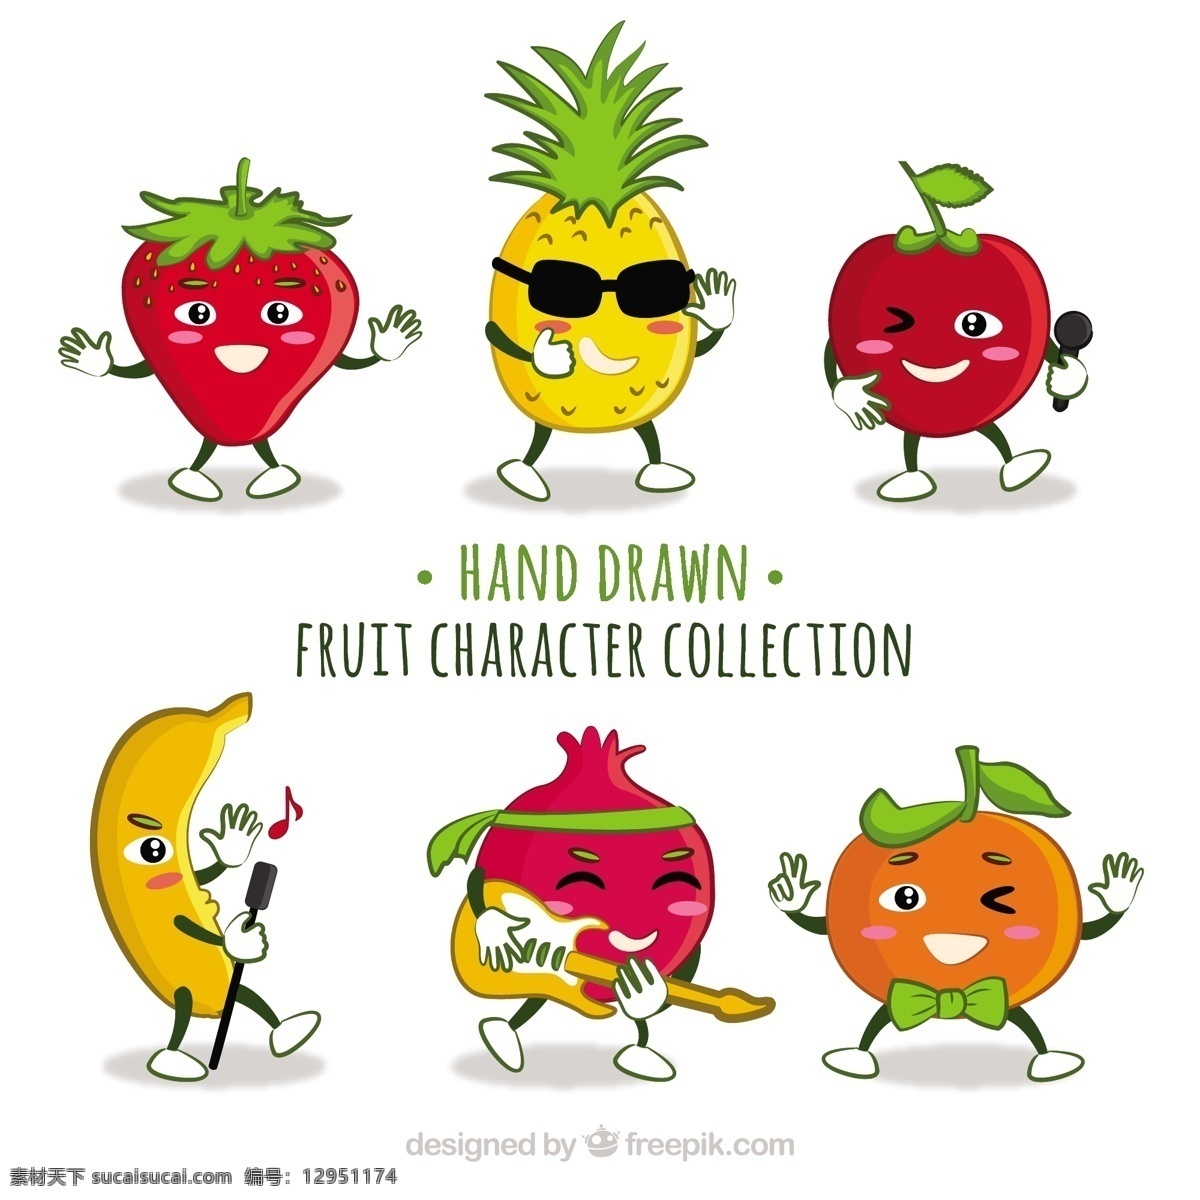 收集 有趣 水果 字符 采购产品食物 手 夏天 手绘 橙子 热带 饮料 绘画 天然 香蕉 健康 草莓 菠萝 吃 滑稽 健康的食物 饮食 营养